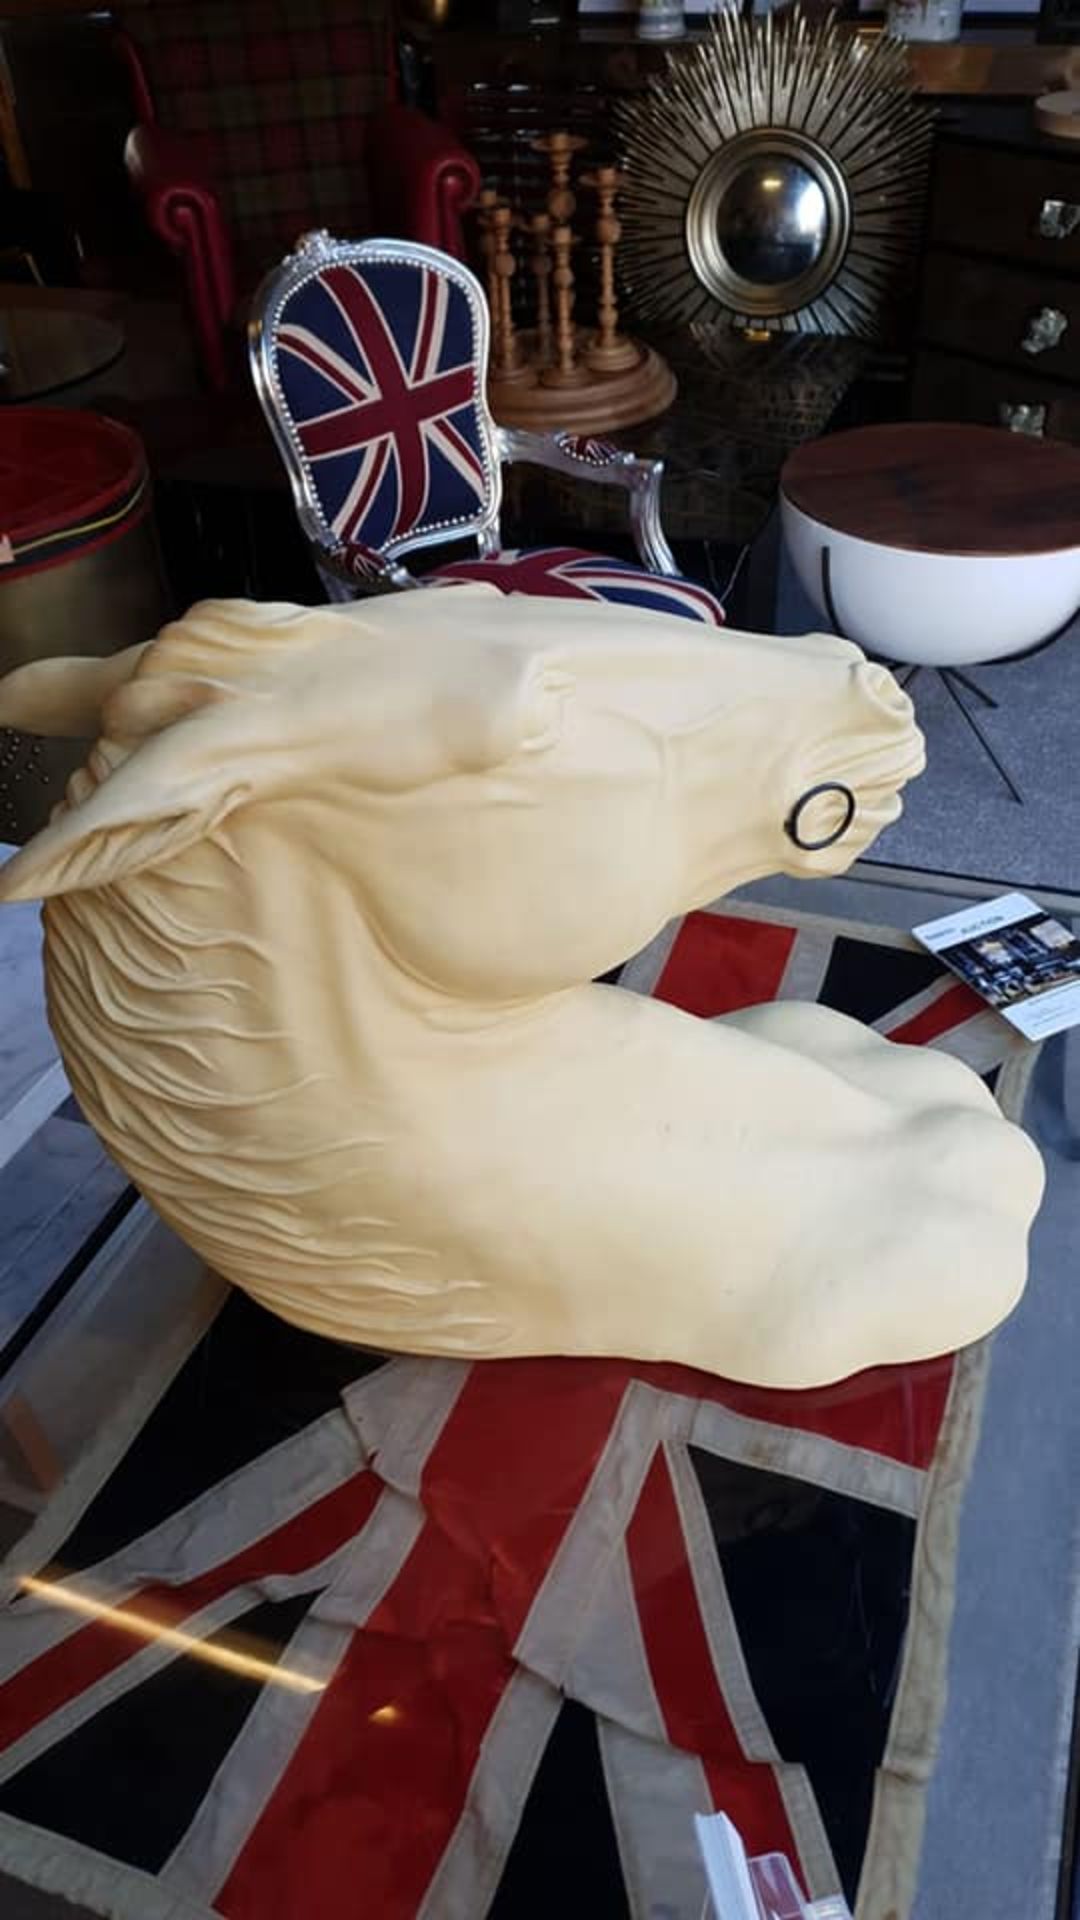 Bonfire – White Composite Sculpture of a Horse Head 67 x 43 x 87cm